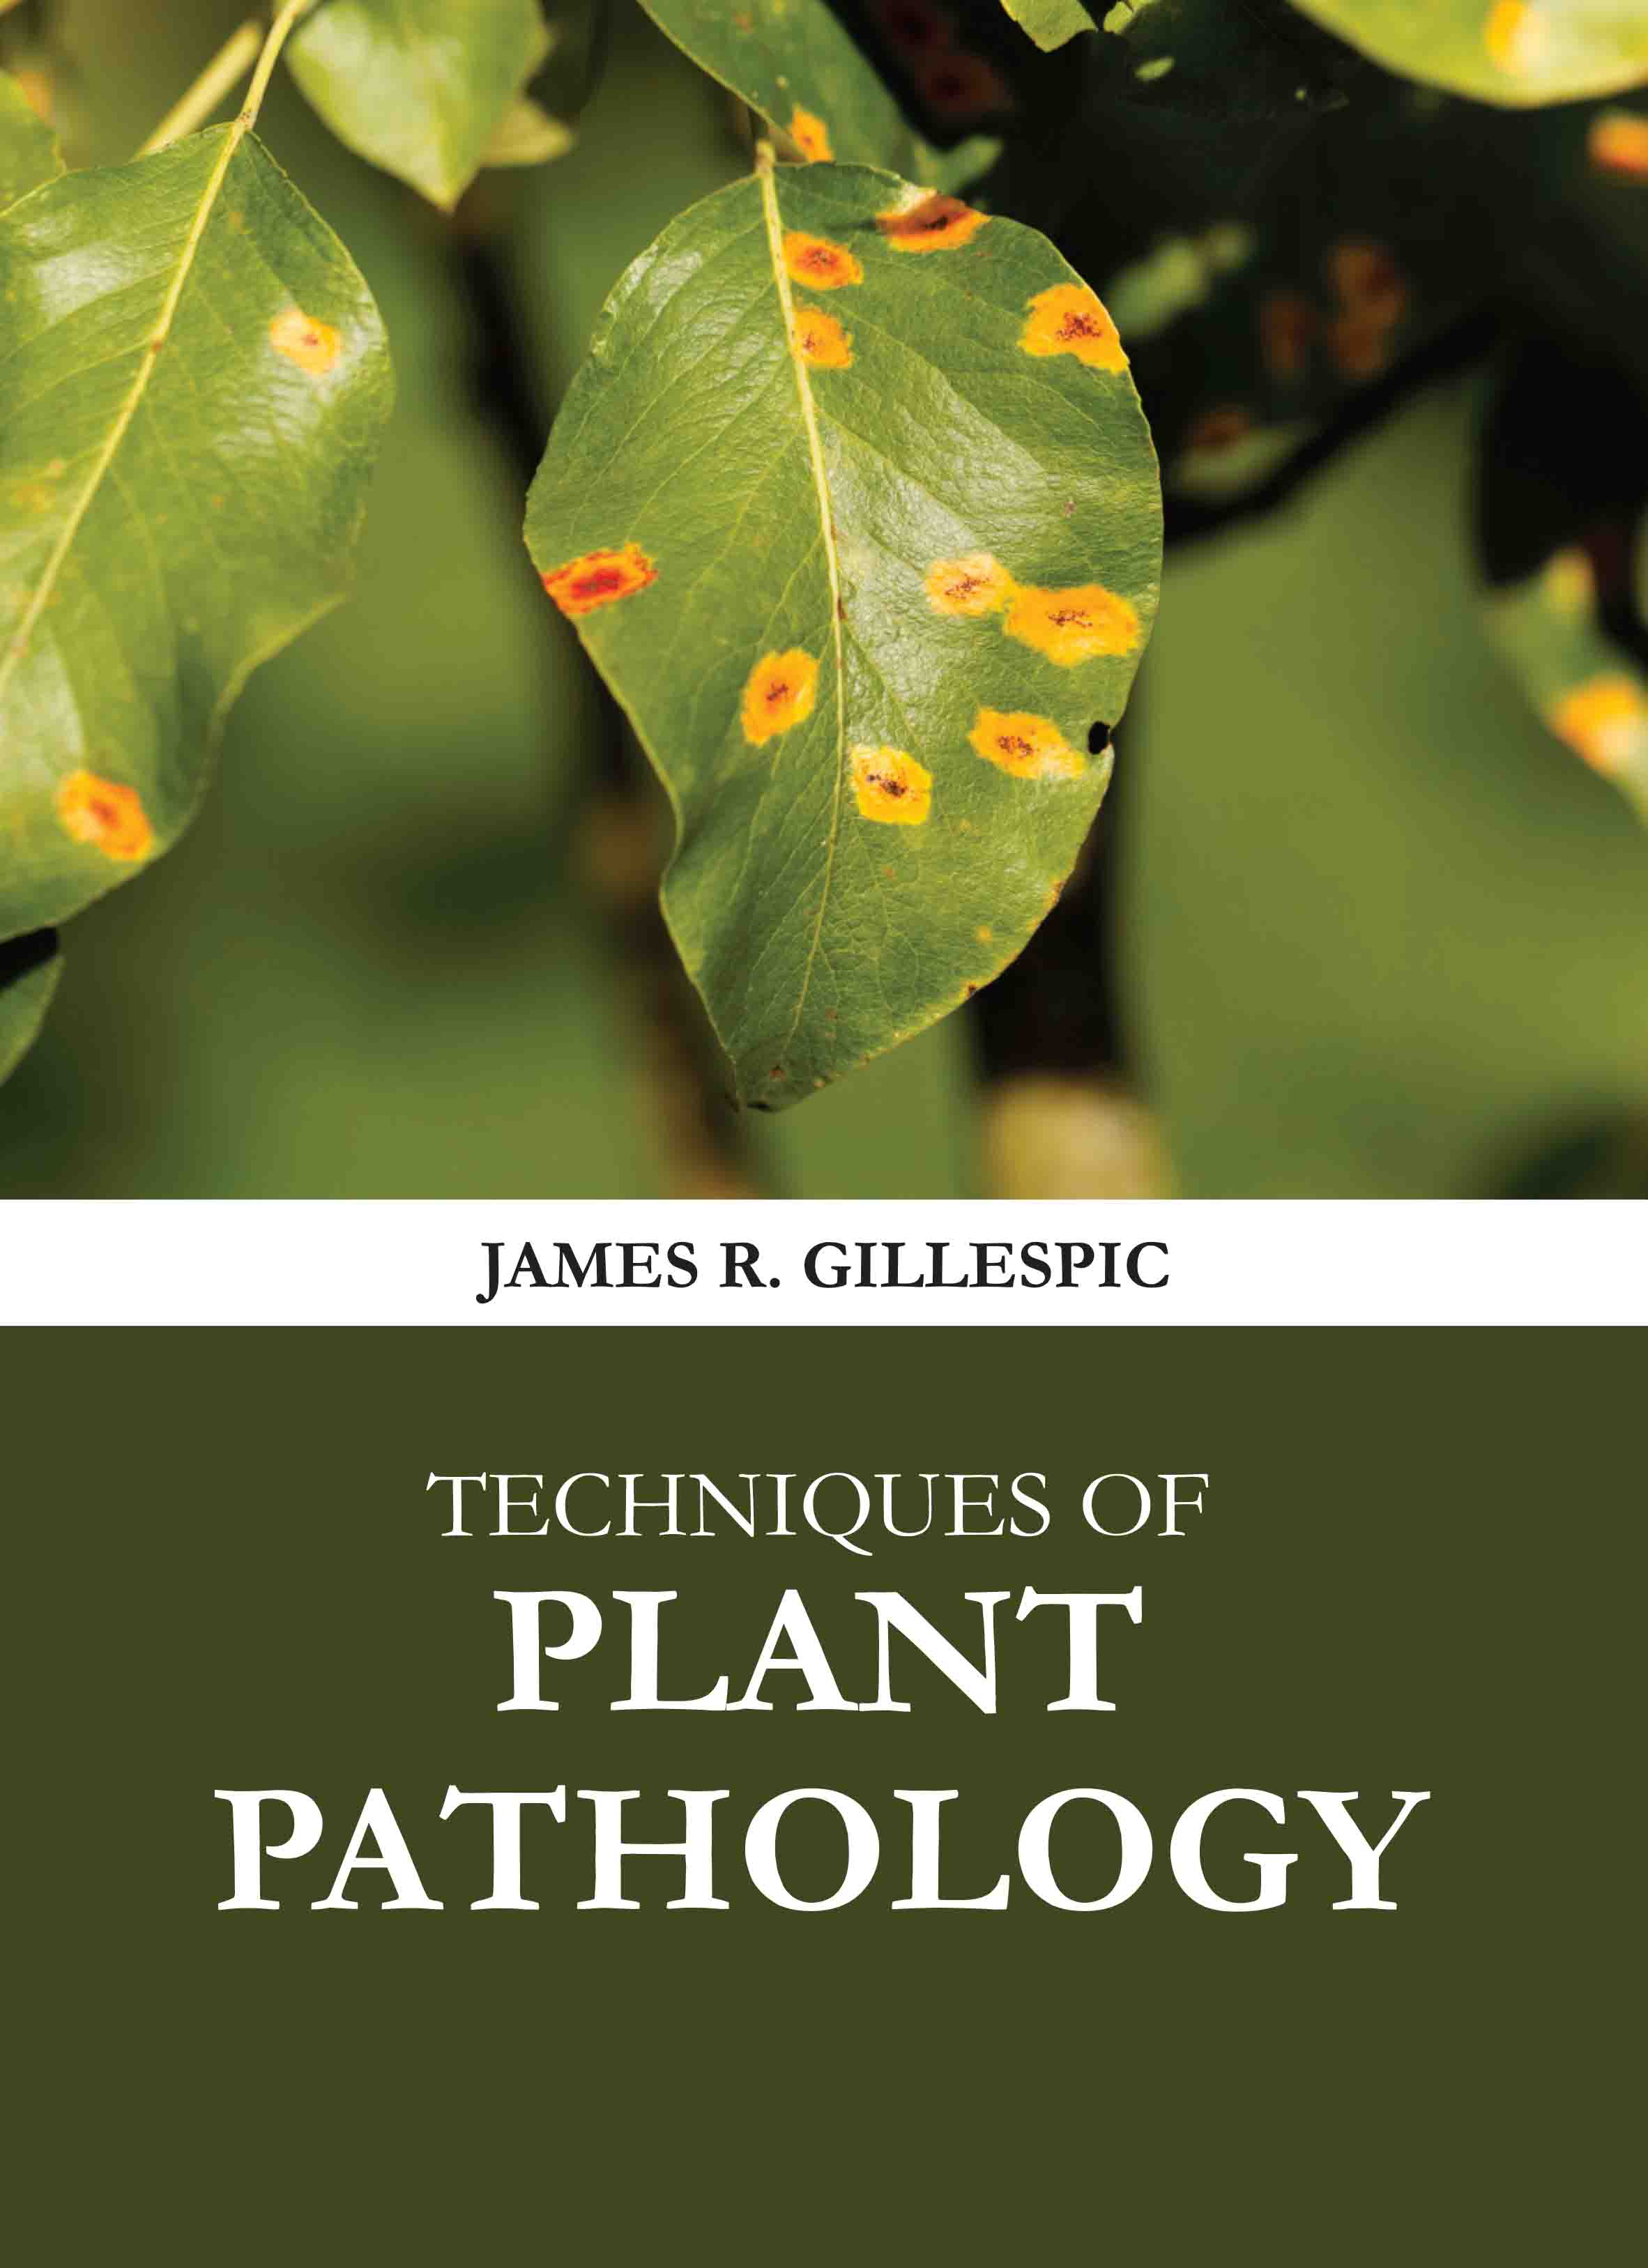 Techniques of Plant Pathology